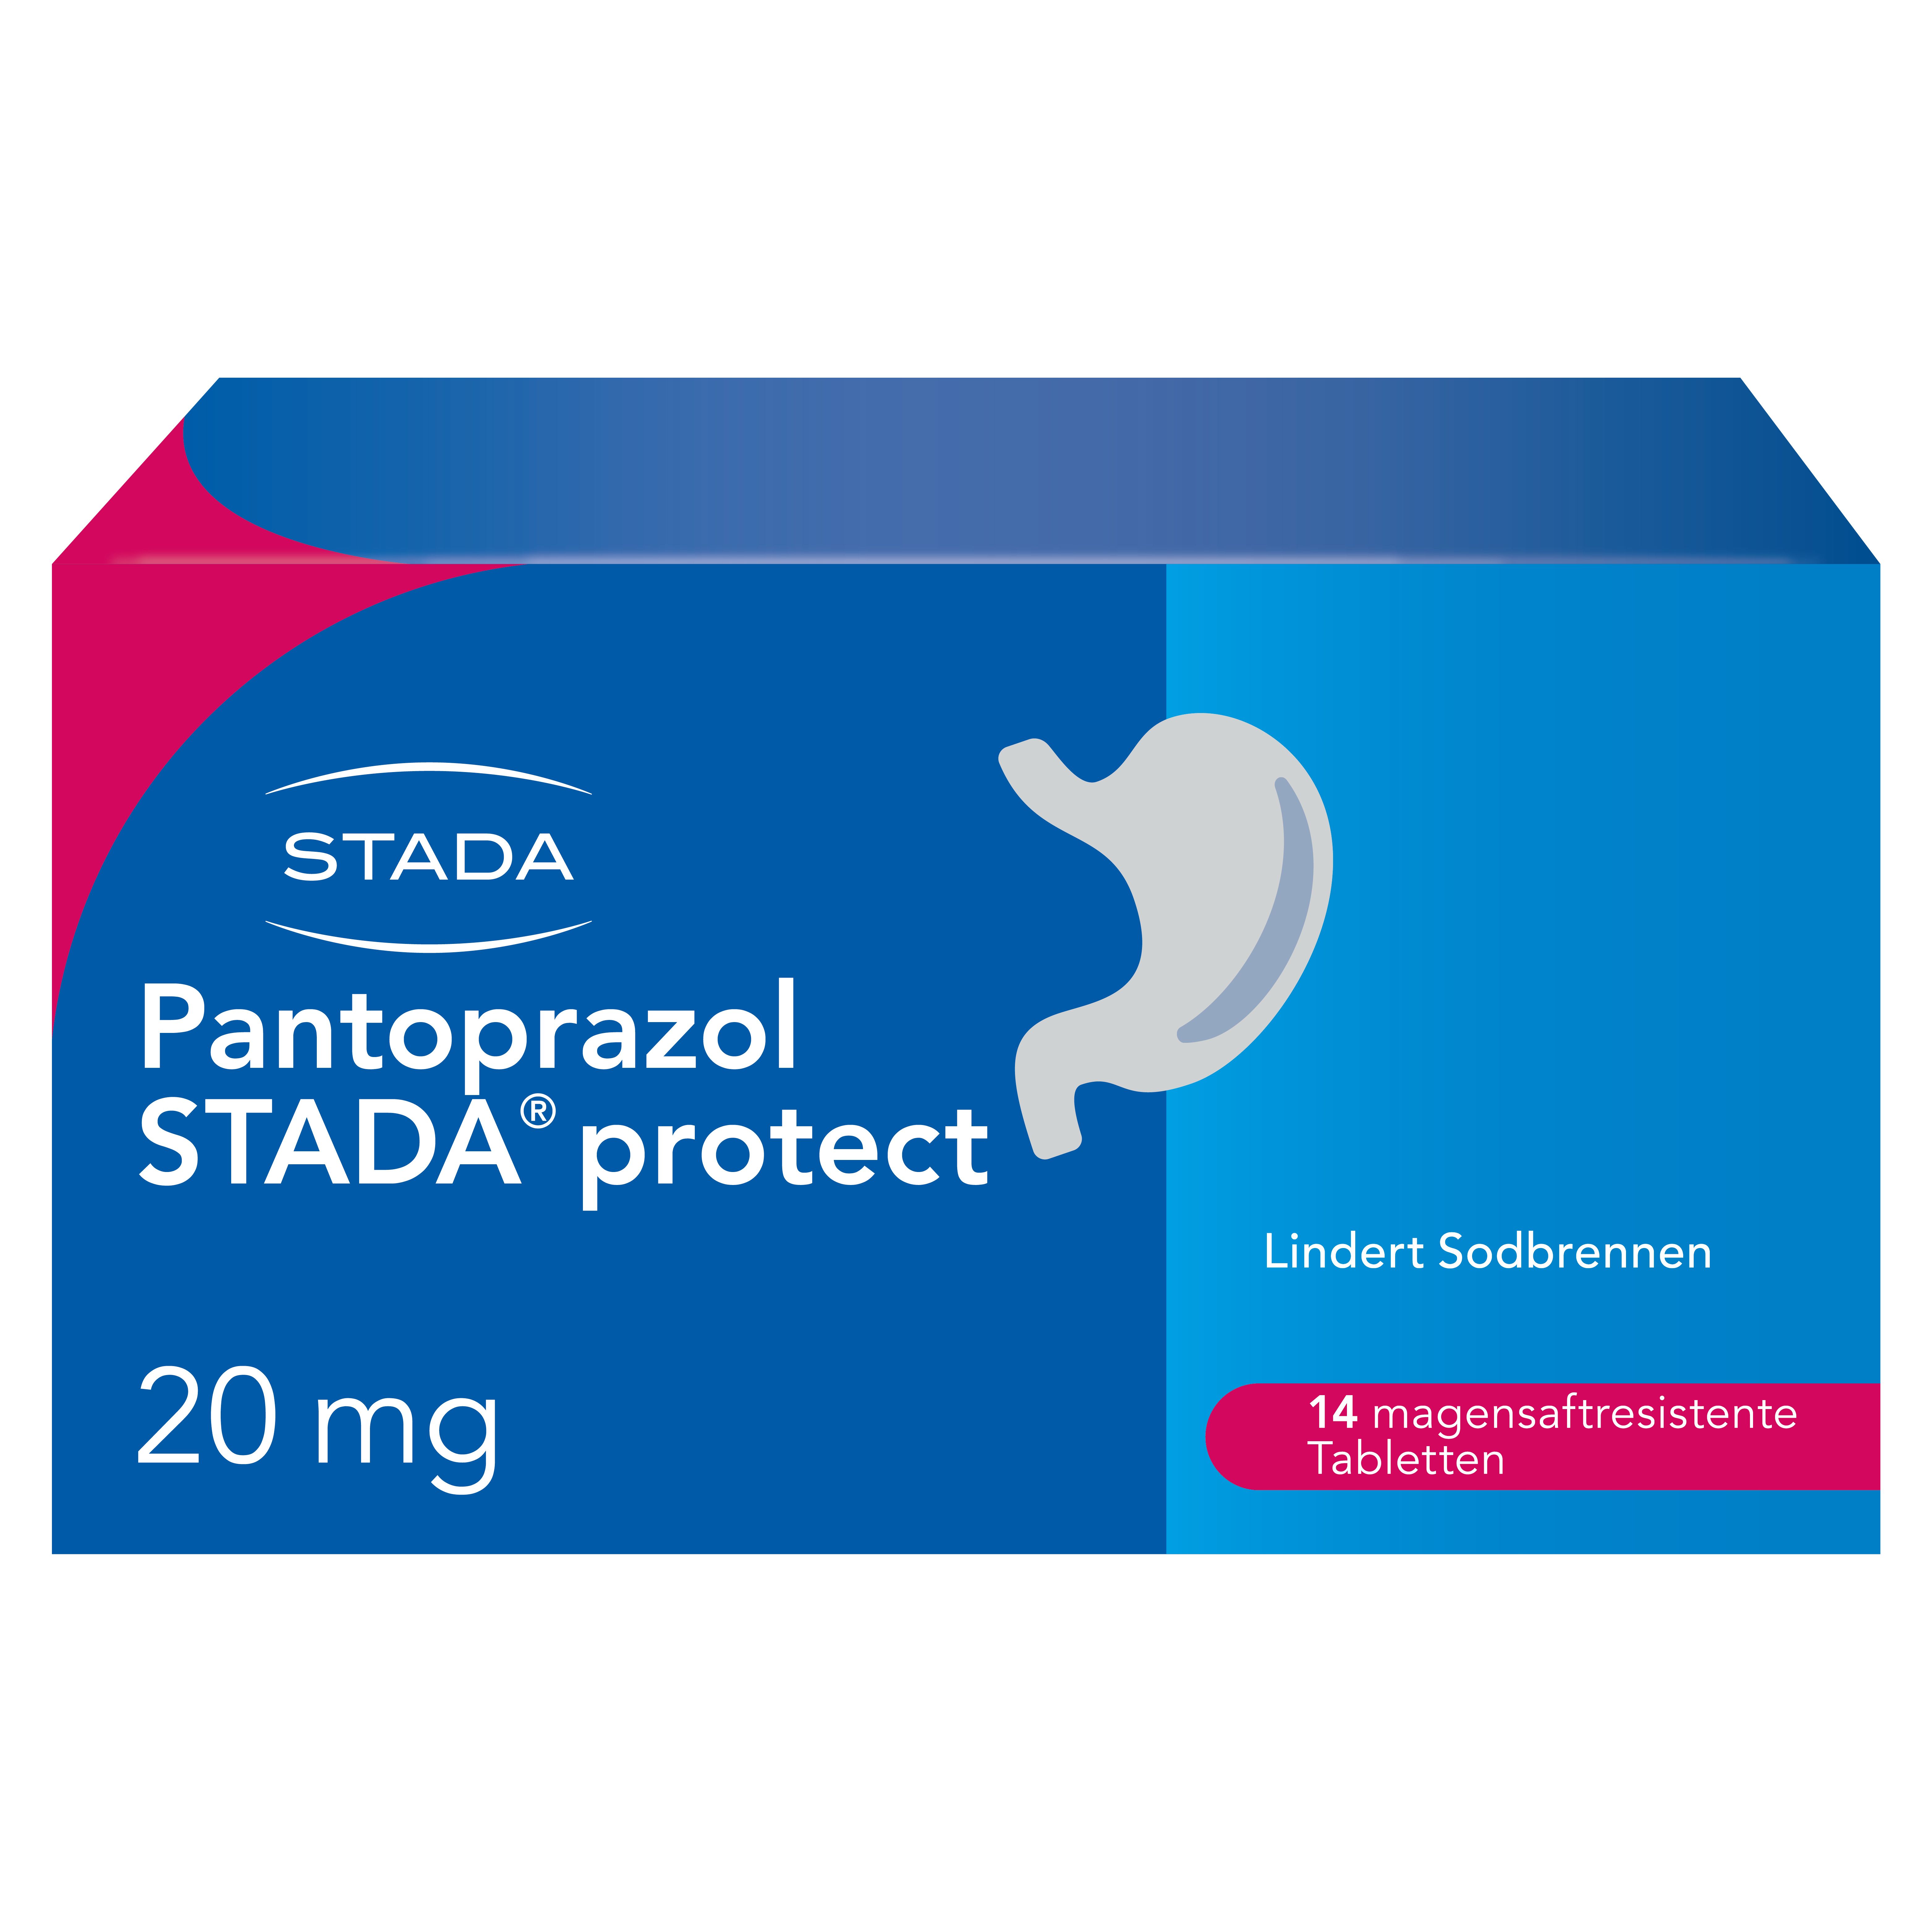 Pantoprazol STADA® protect 20 mg magensaftres.Tabl., lindert Sodbrennen